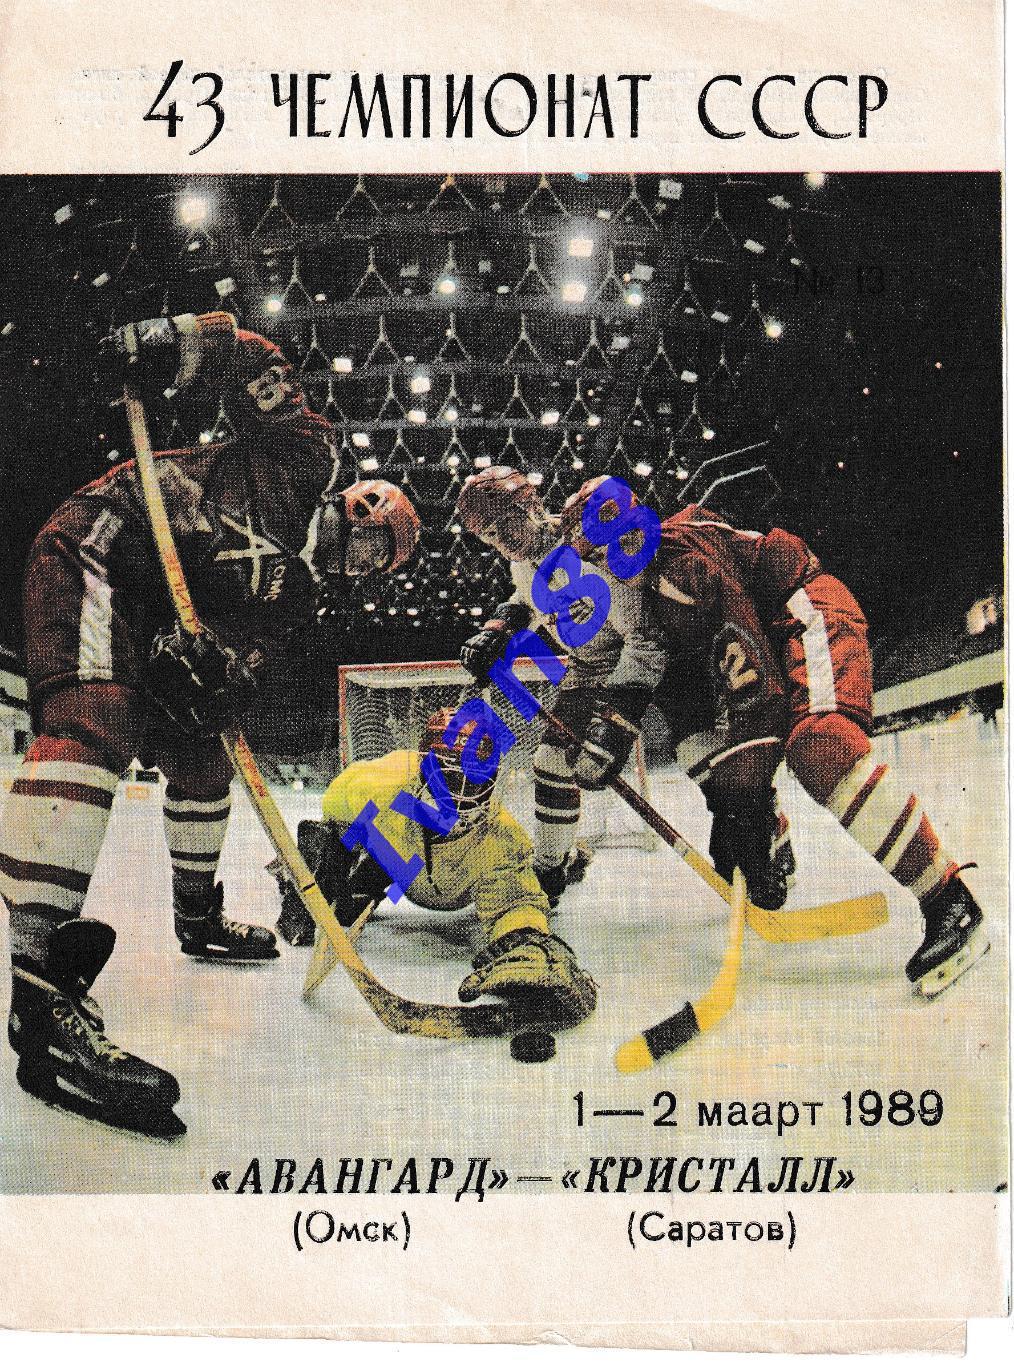 Авангард Омск - Кристалл Саратов 1-2 марта 1989